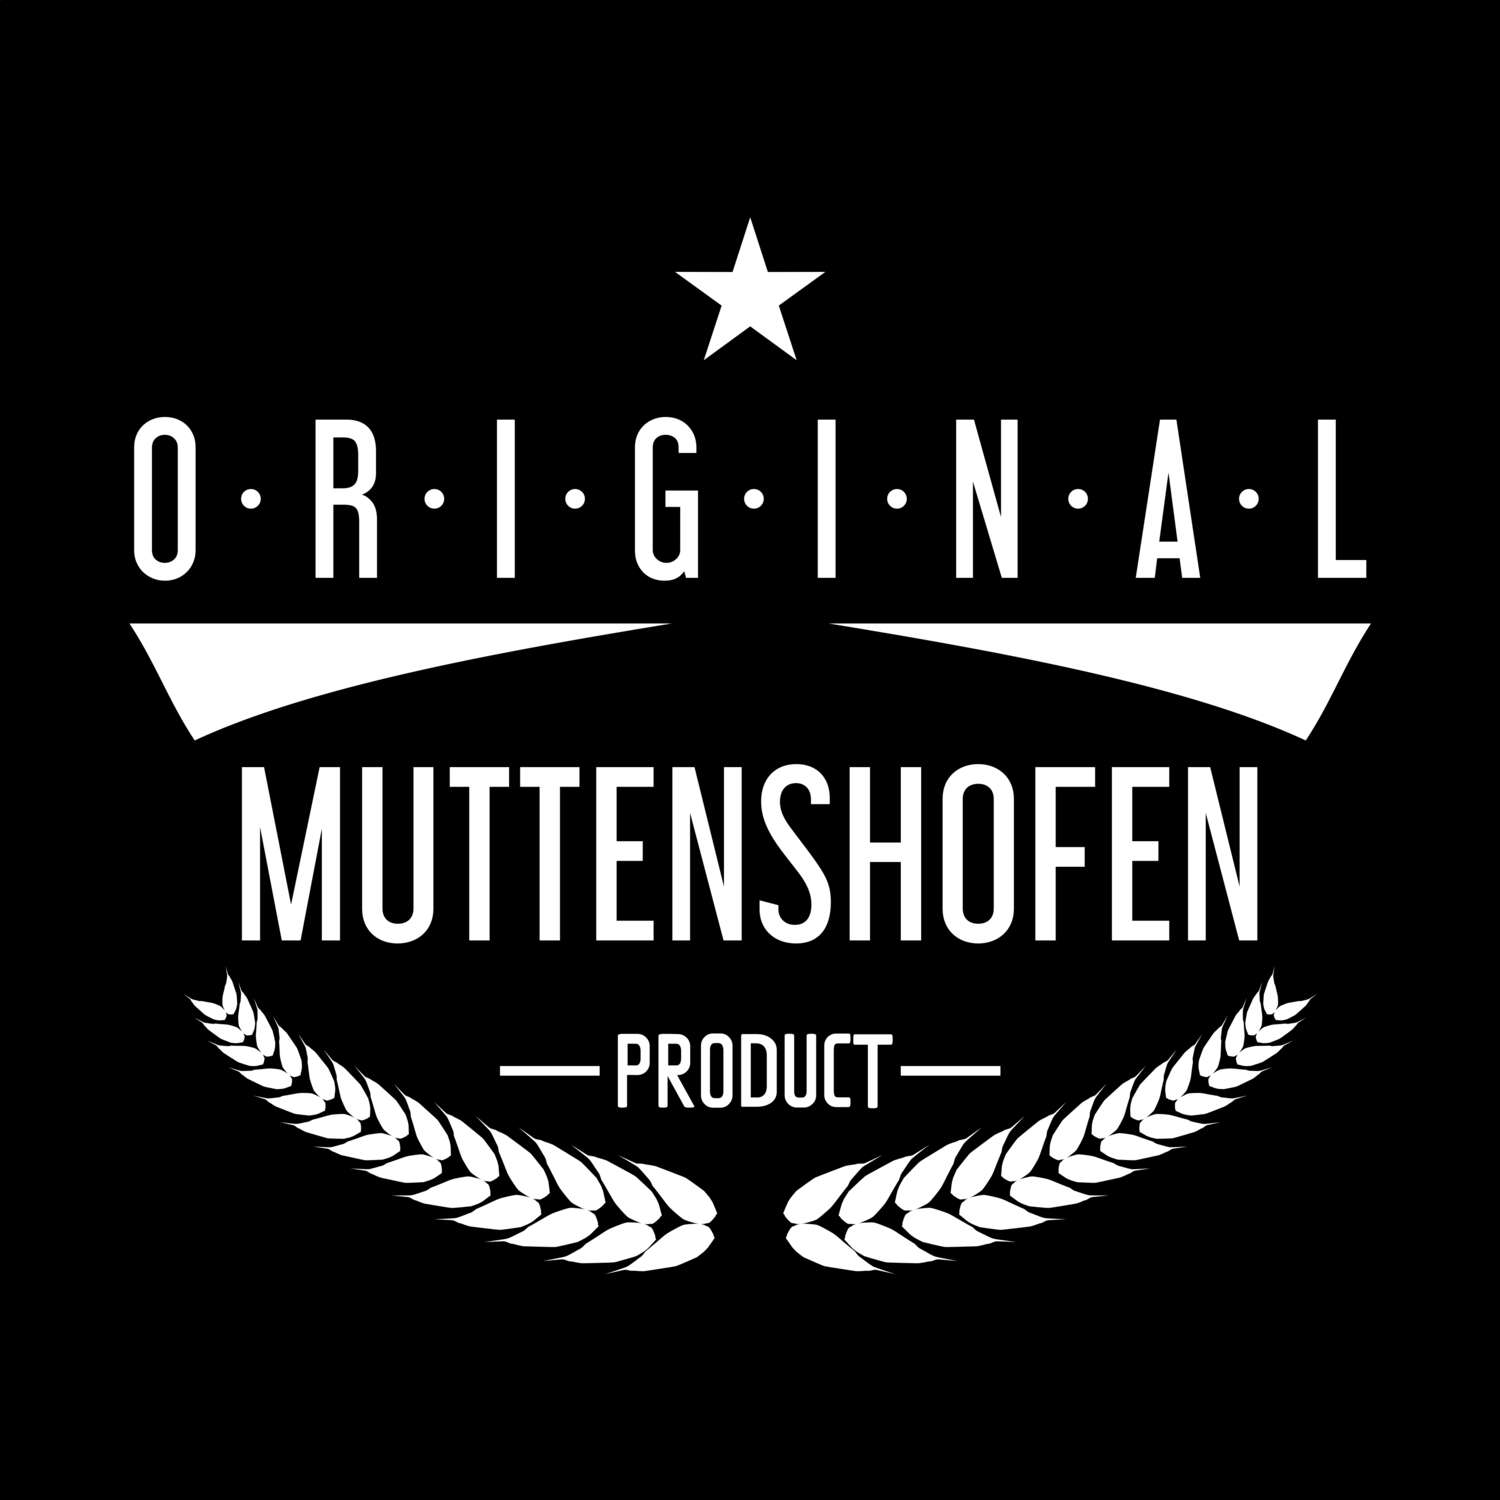 Muttenshofen T-Shirt »Original Product«